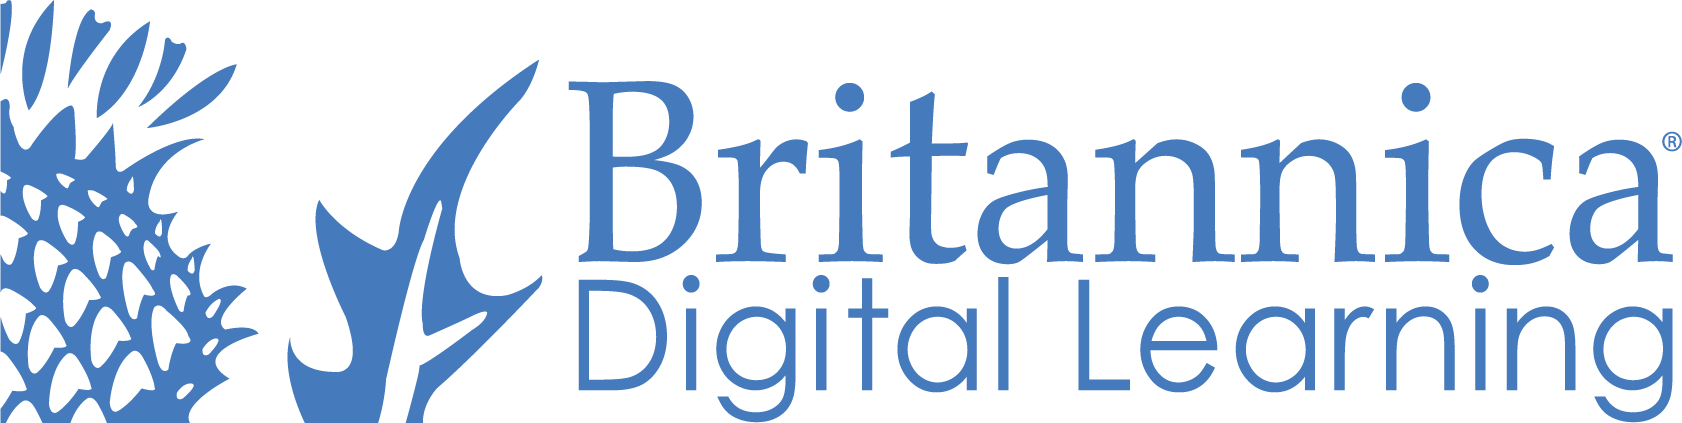 Britannica Digital Learning logo